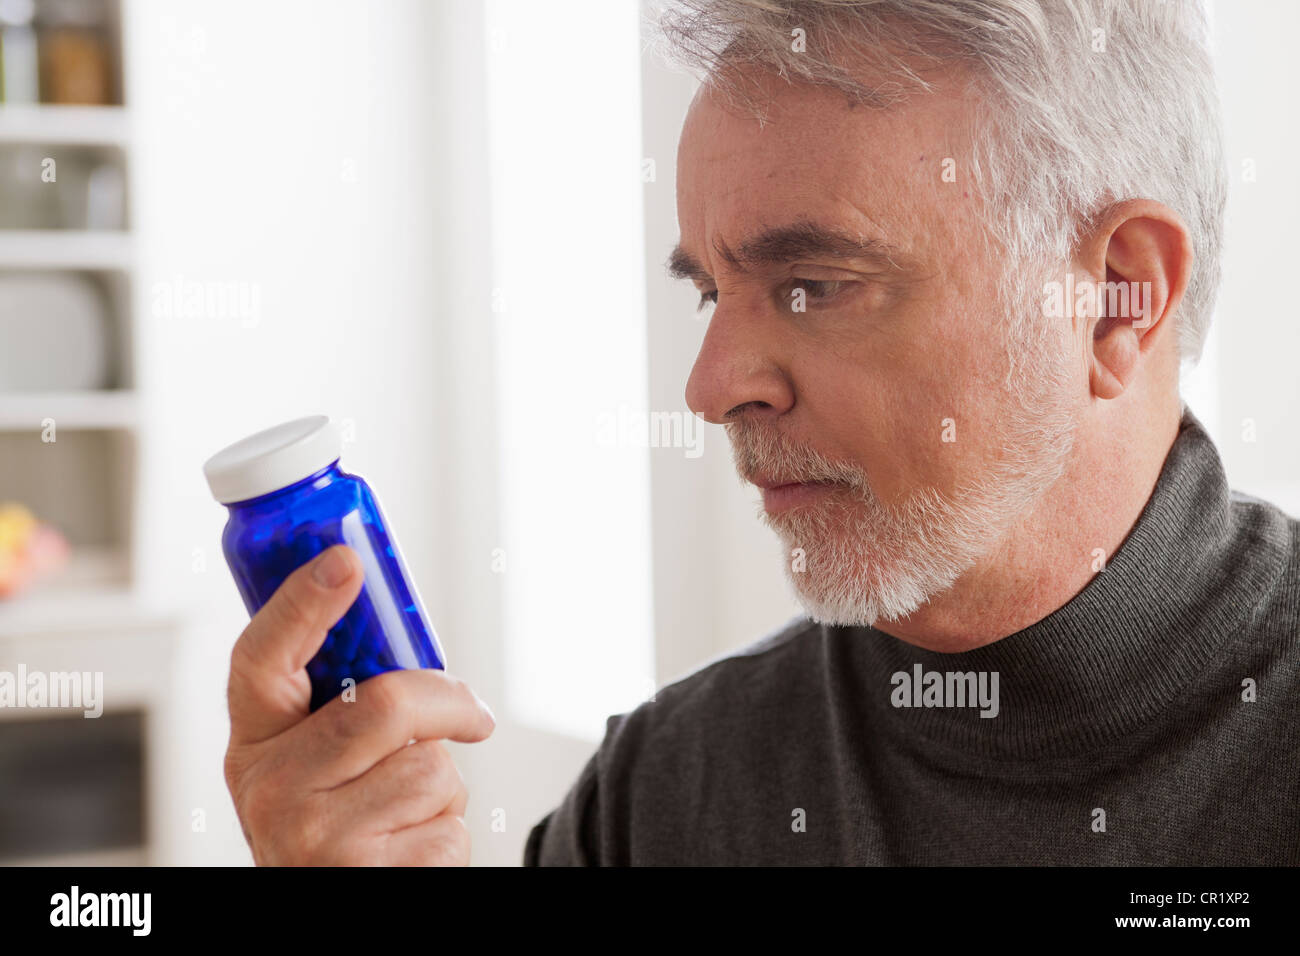 USA, Californie, Los Angeles, Senior men reading label on medicine bottle Banque D'Images